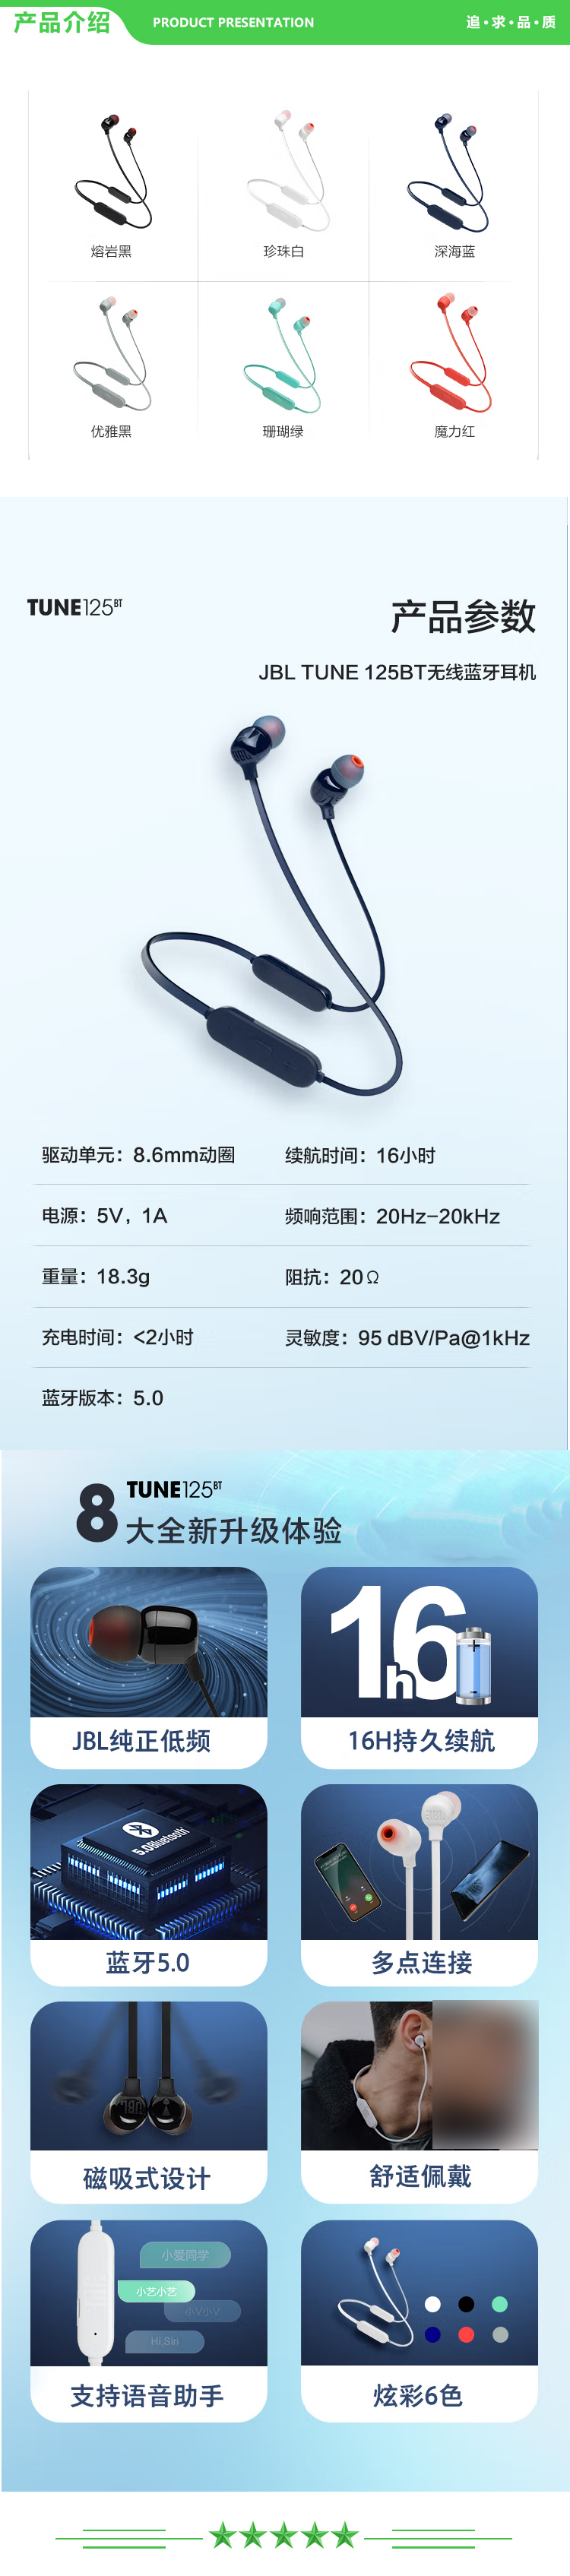 JBL TUNE125BT 颈挂式无线蓝牙耳机 半入耳式通话跑步运动耳机 带麦线控音乐耳机 苹果安卓手机通用 熔岩黑 .jpg